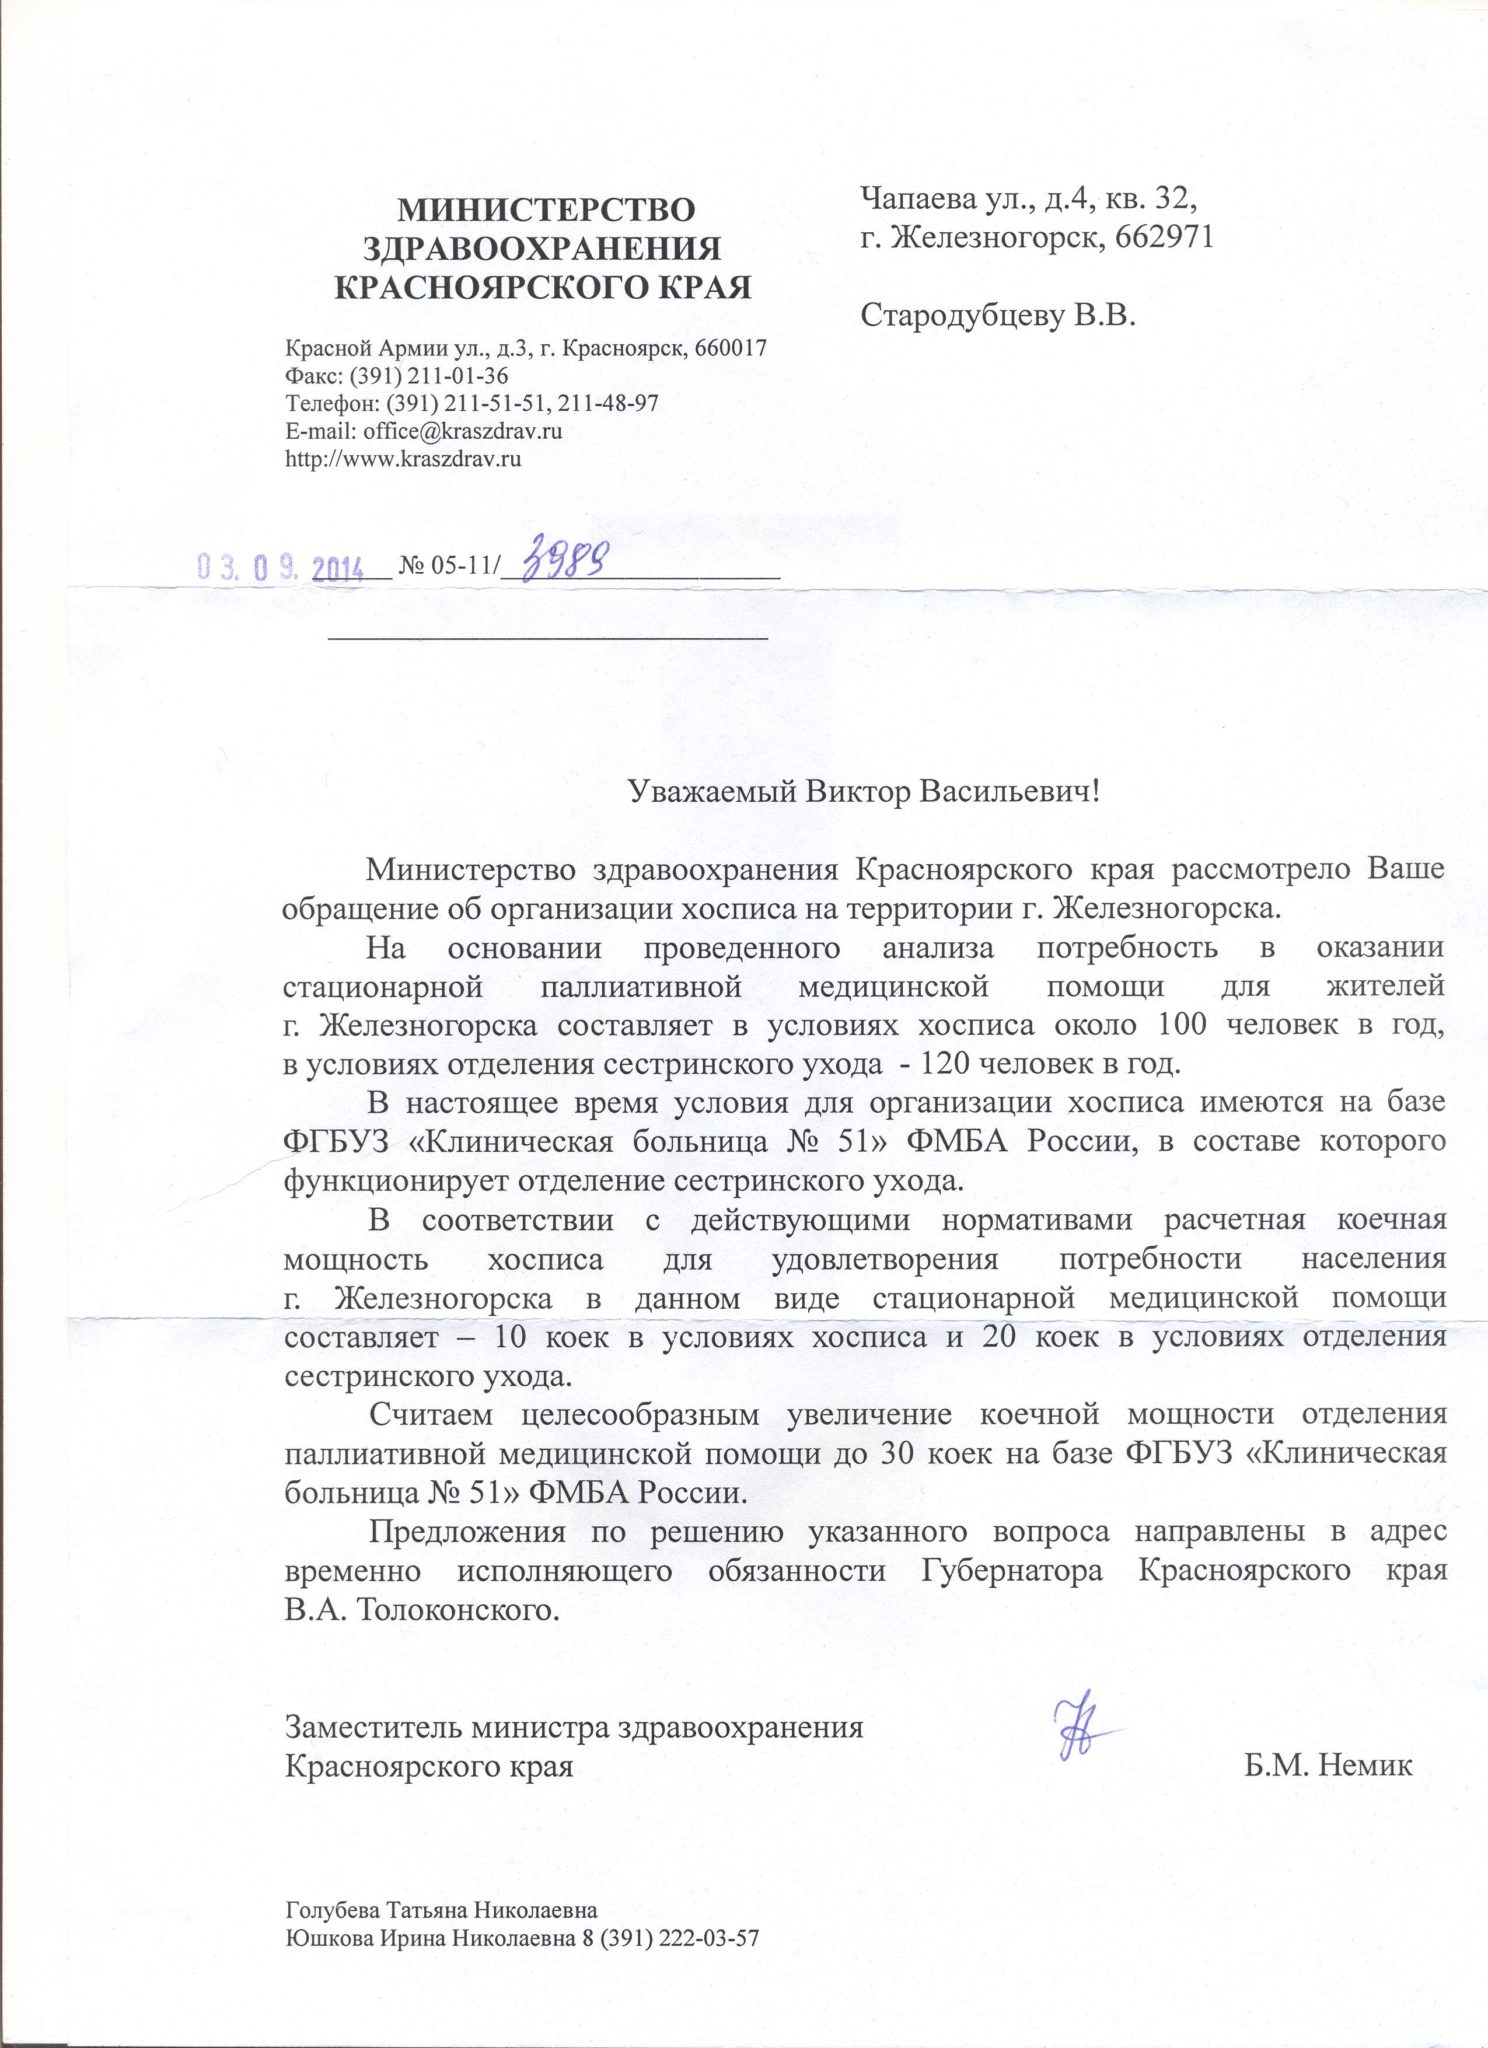 Письмо из Министерства здравоохранения Красноярского края от 03.09.14